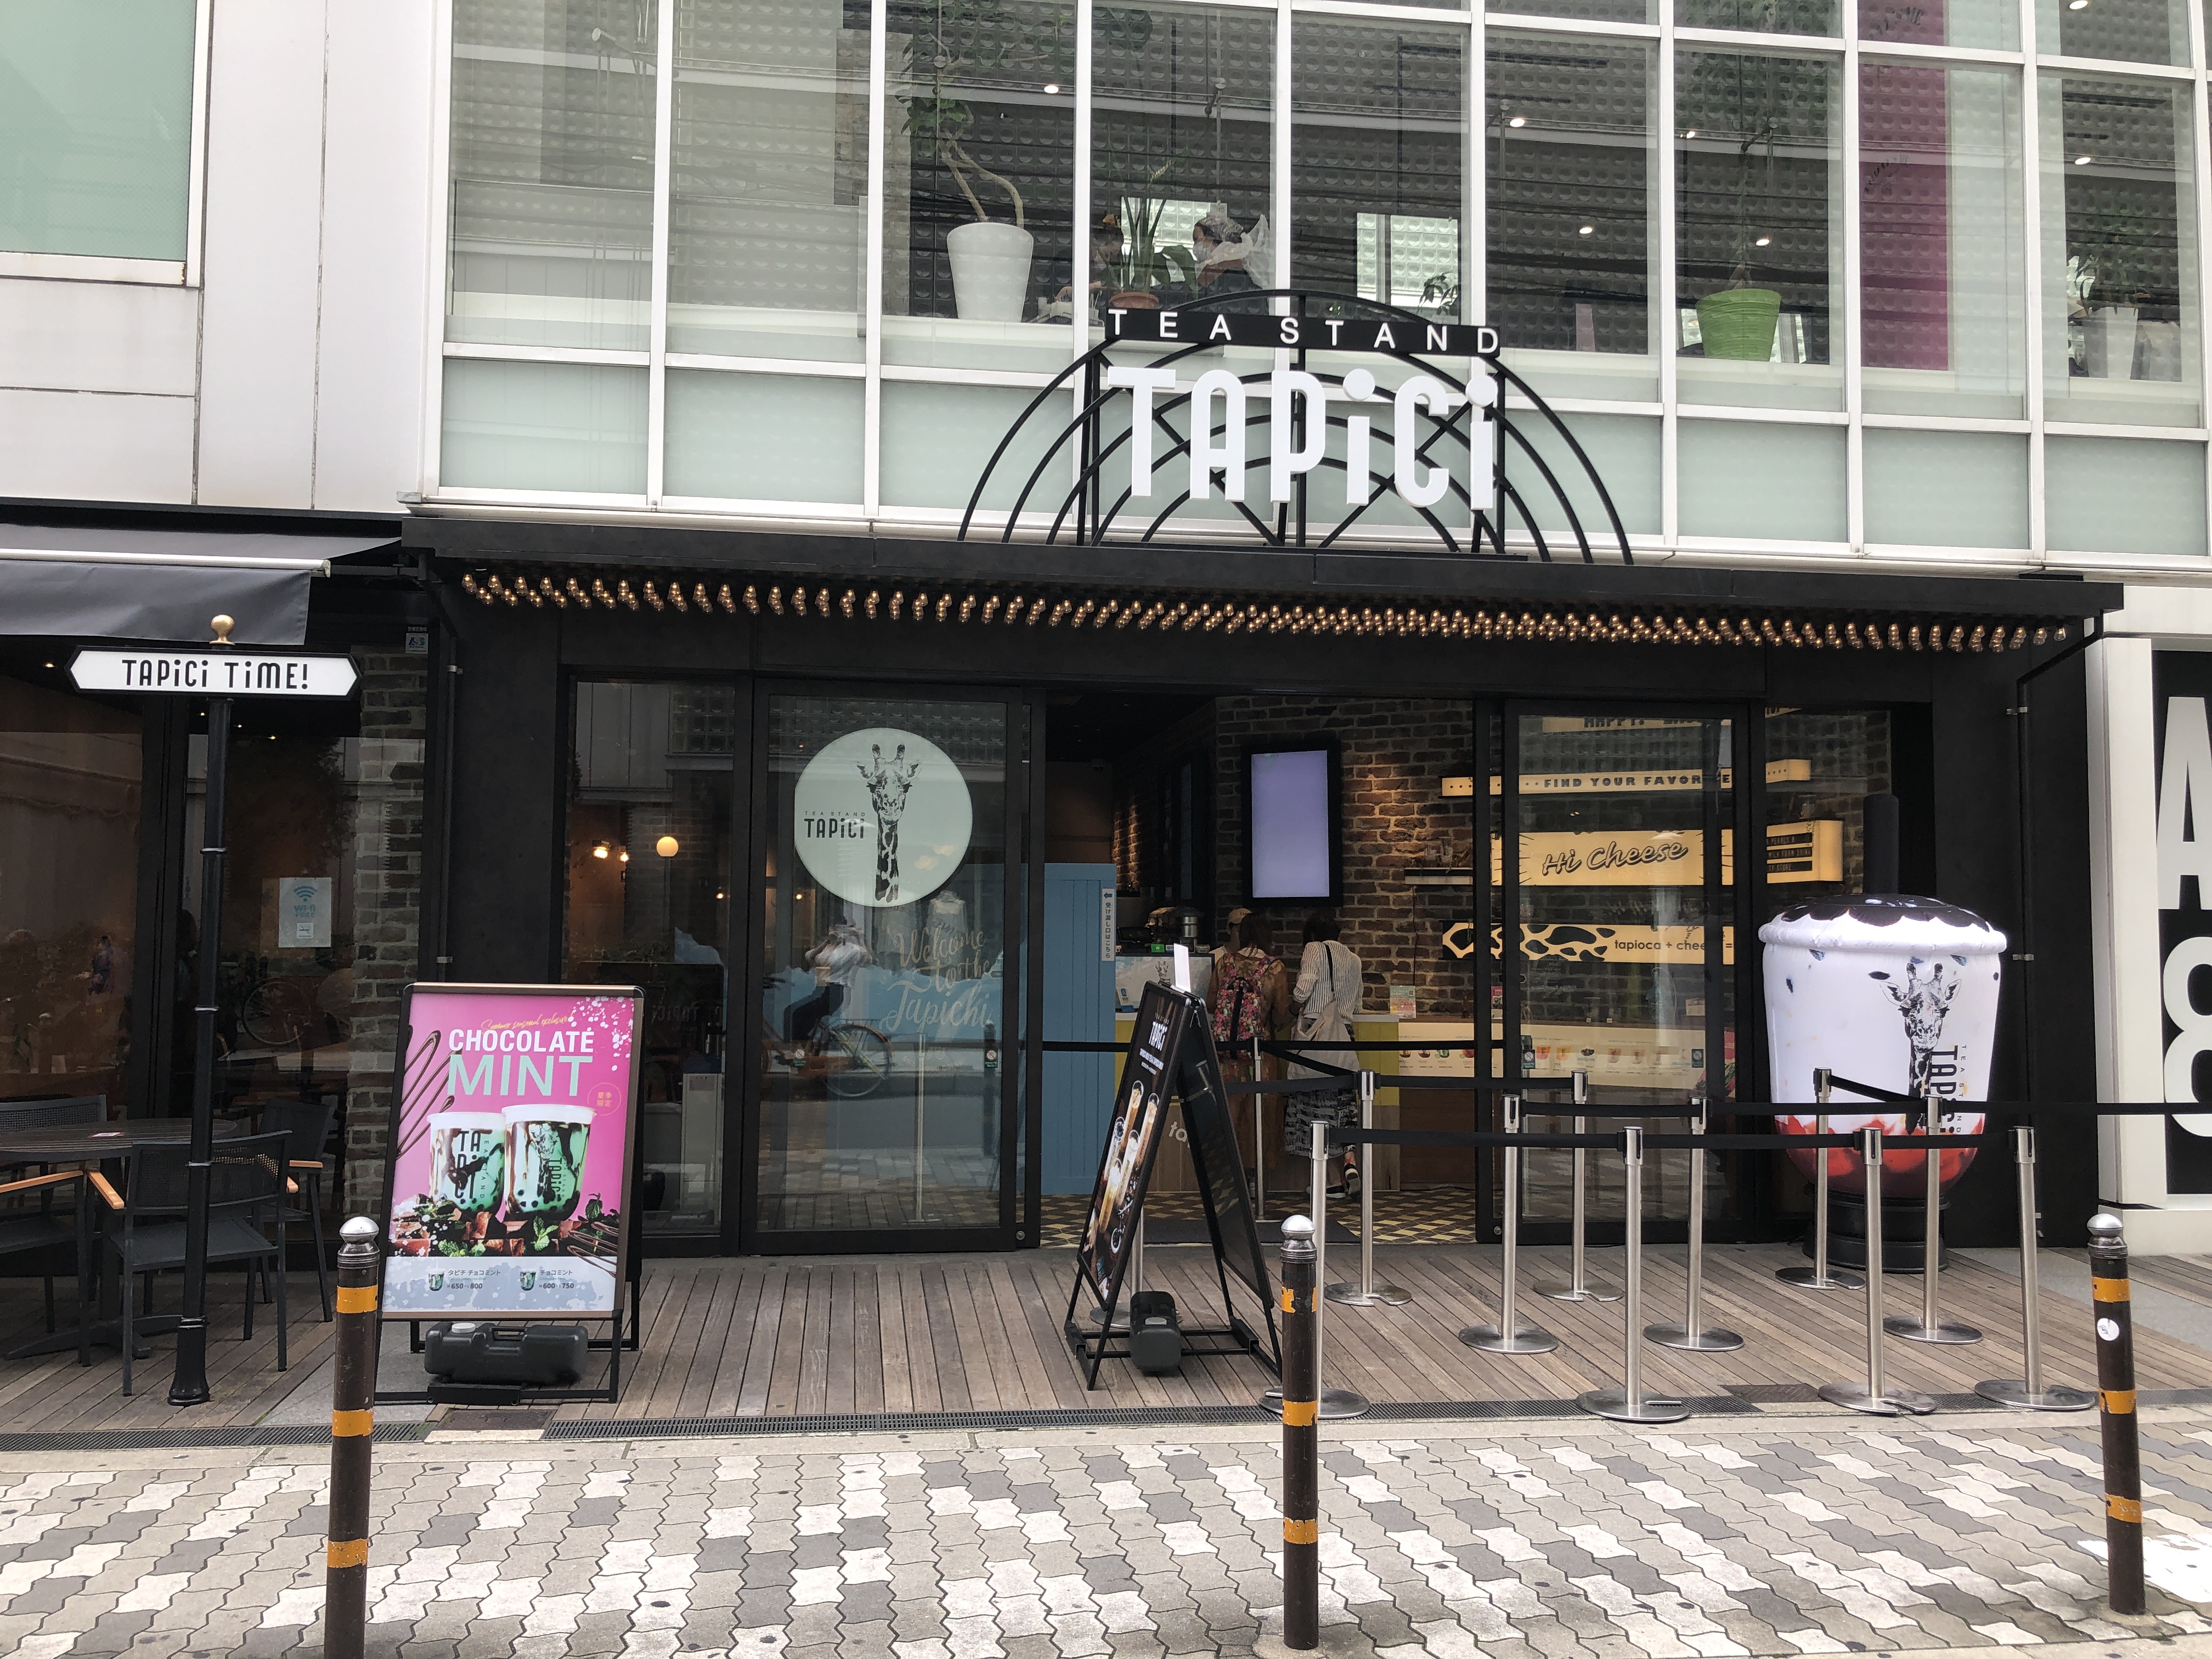 タピオカチーズティー専門店 タピチ ティースタンド が心斎橋opaきれい館にオープンした 7 20 大阪ミナミじゃーなる